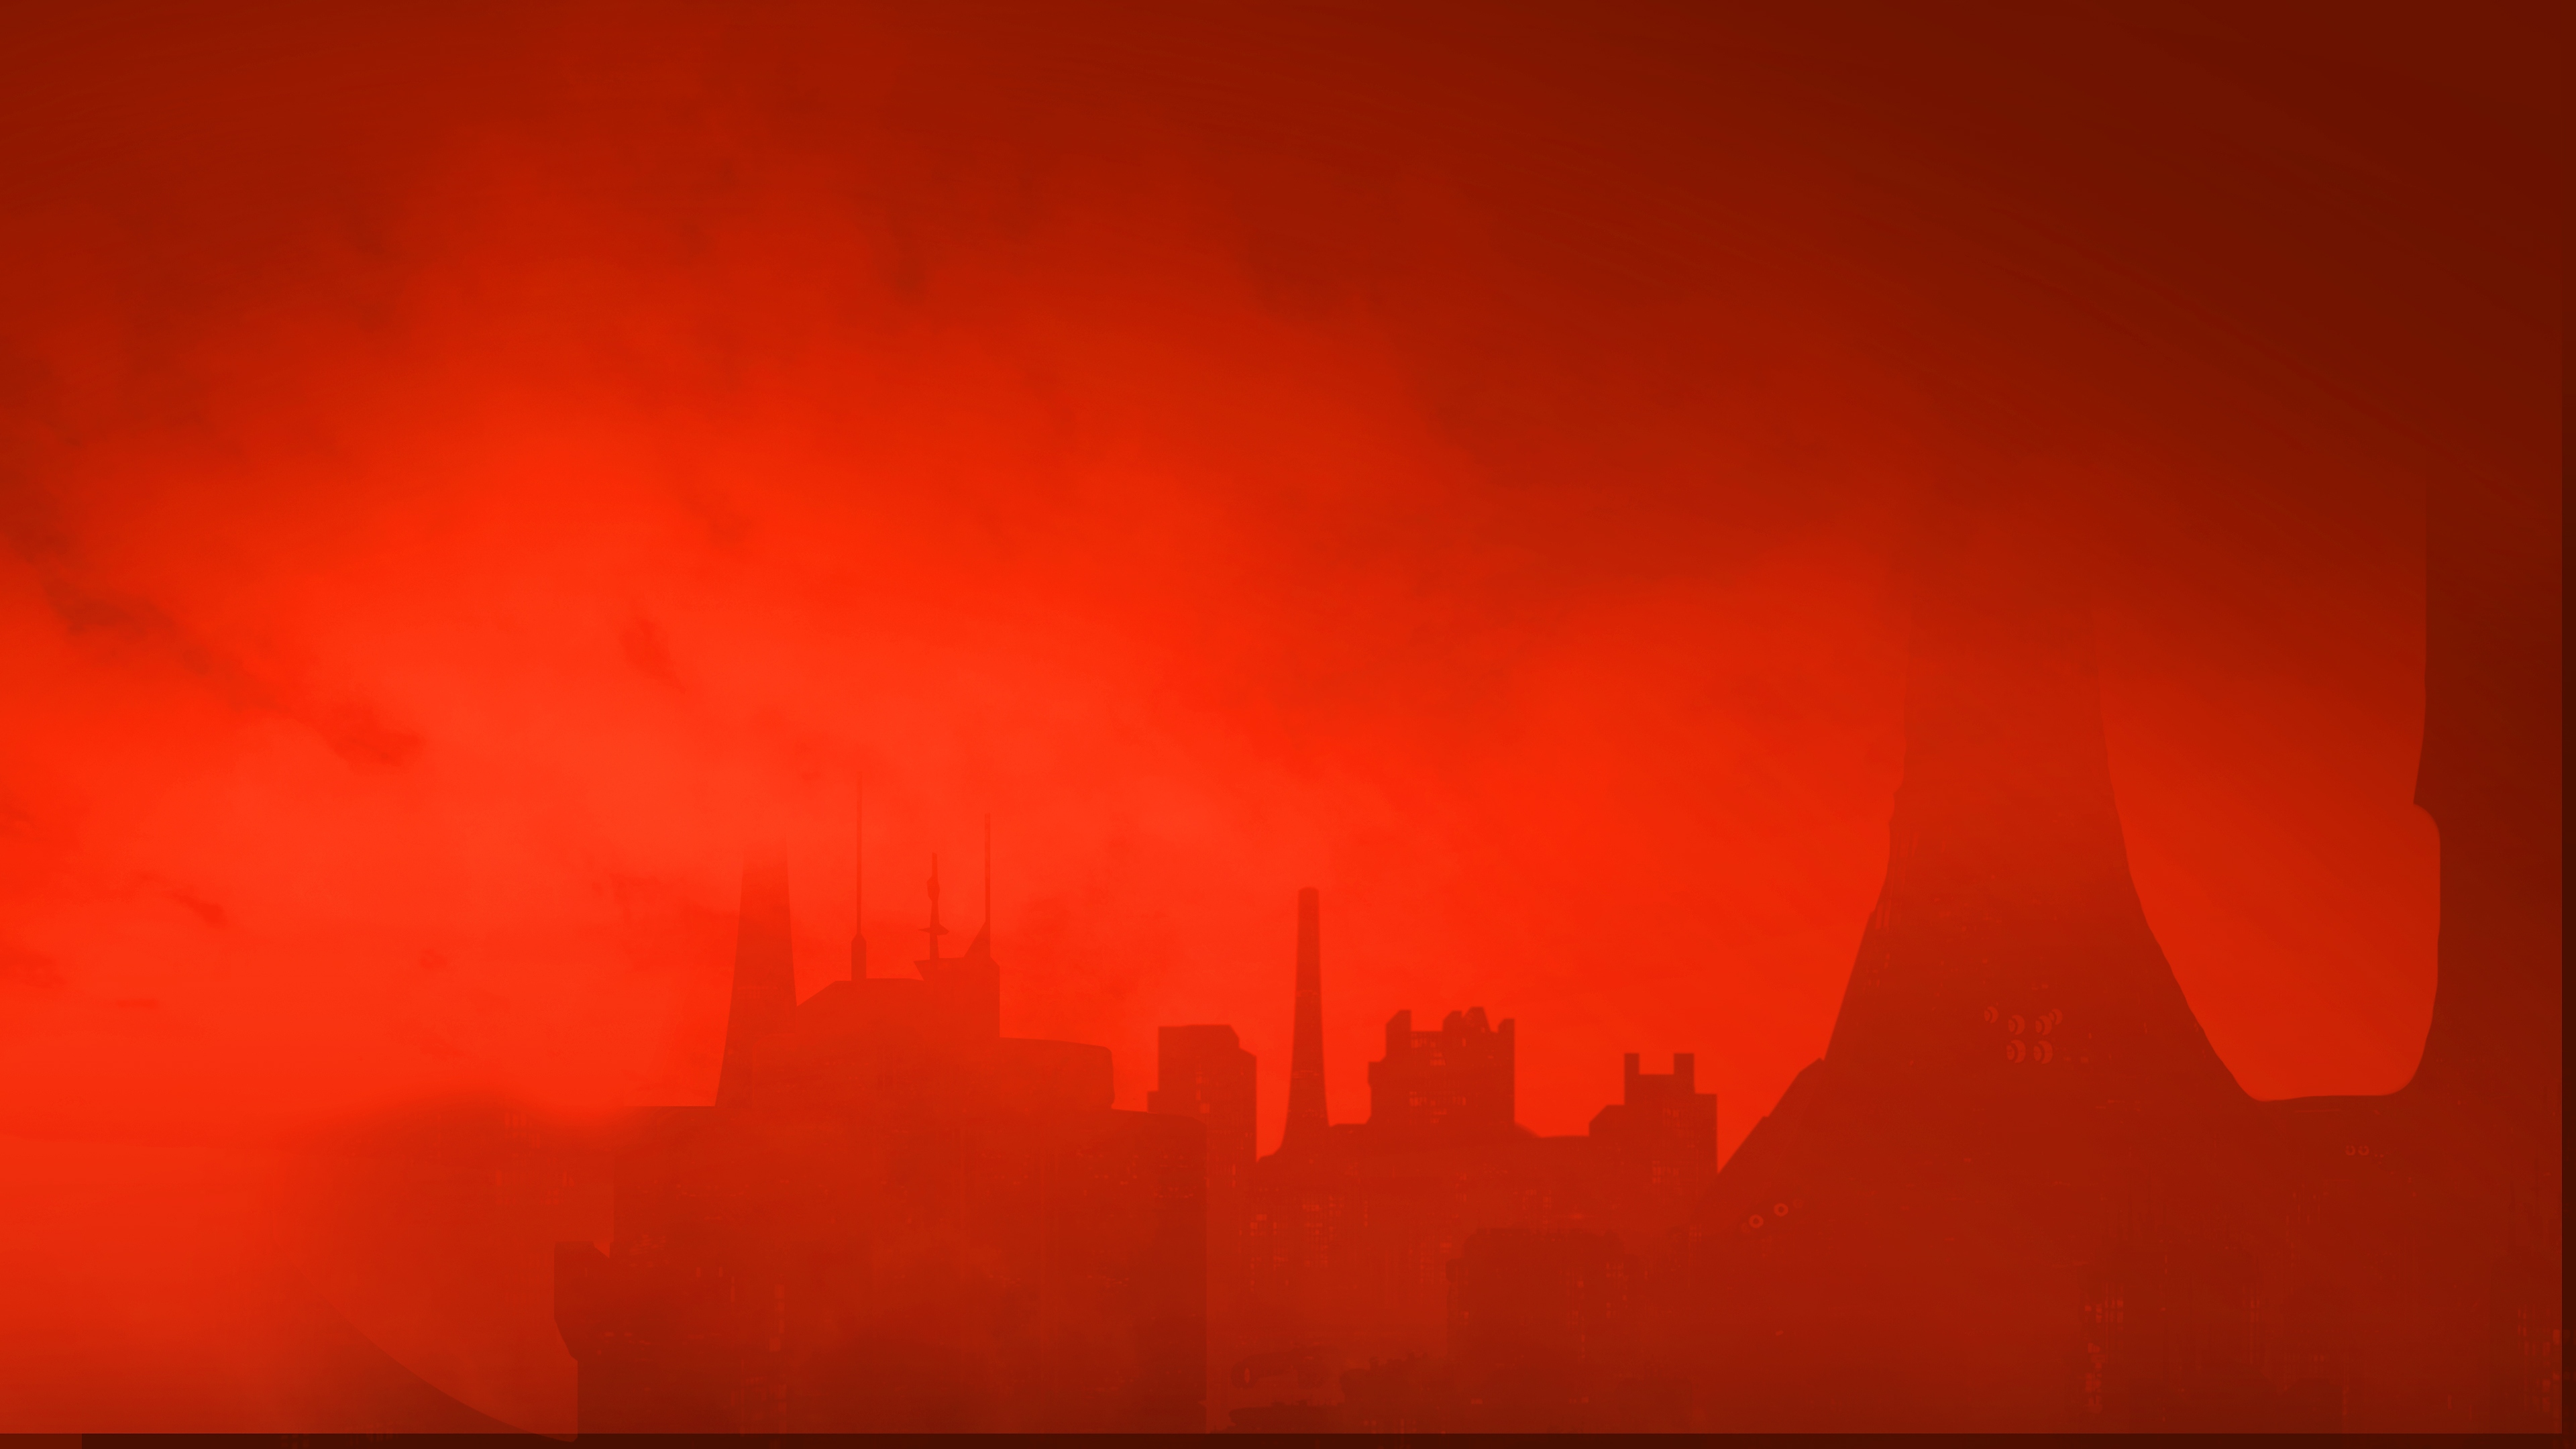 Bakgrunnsbilde fra The Ascent av en skyline under en rød himmel